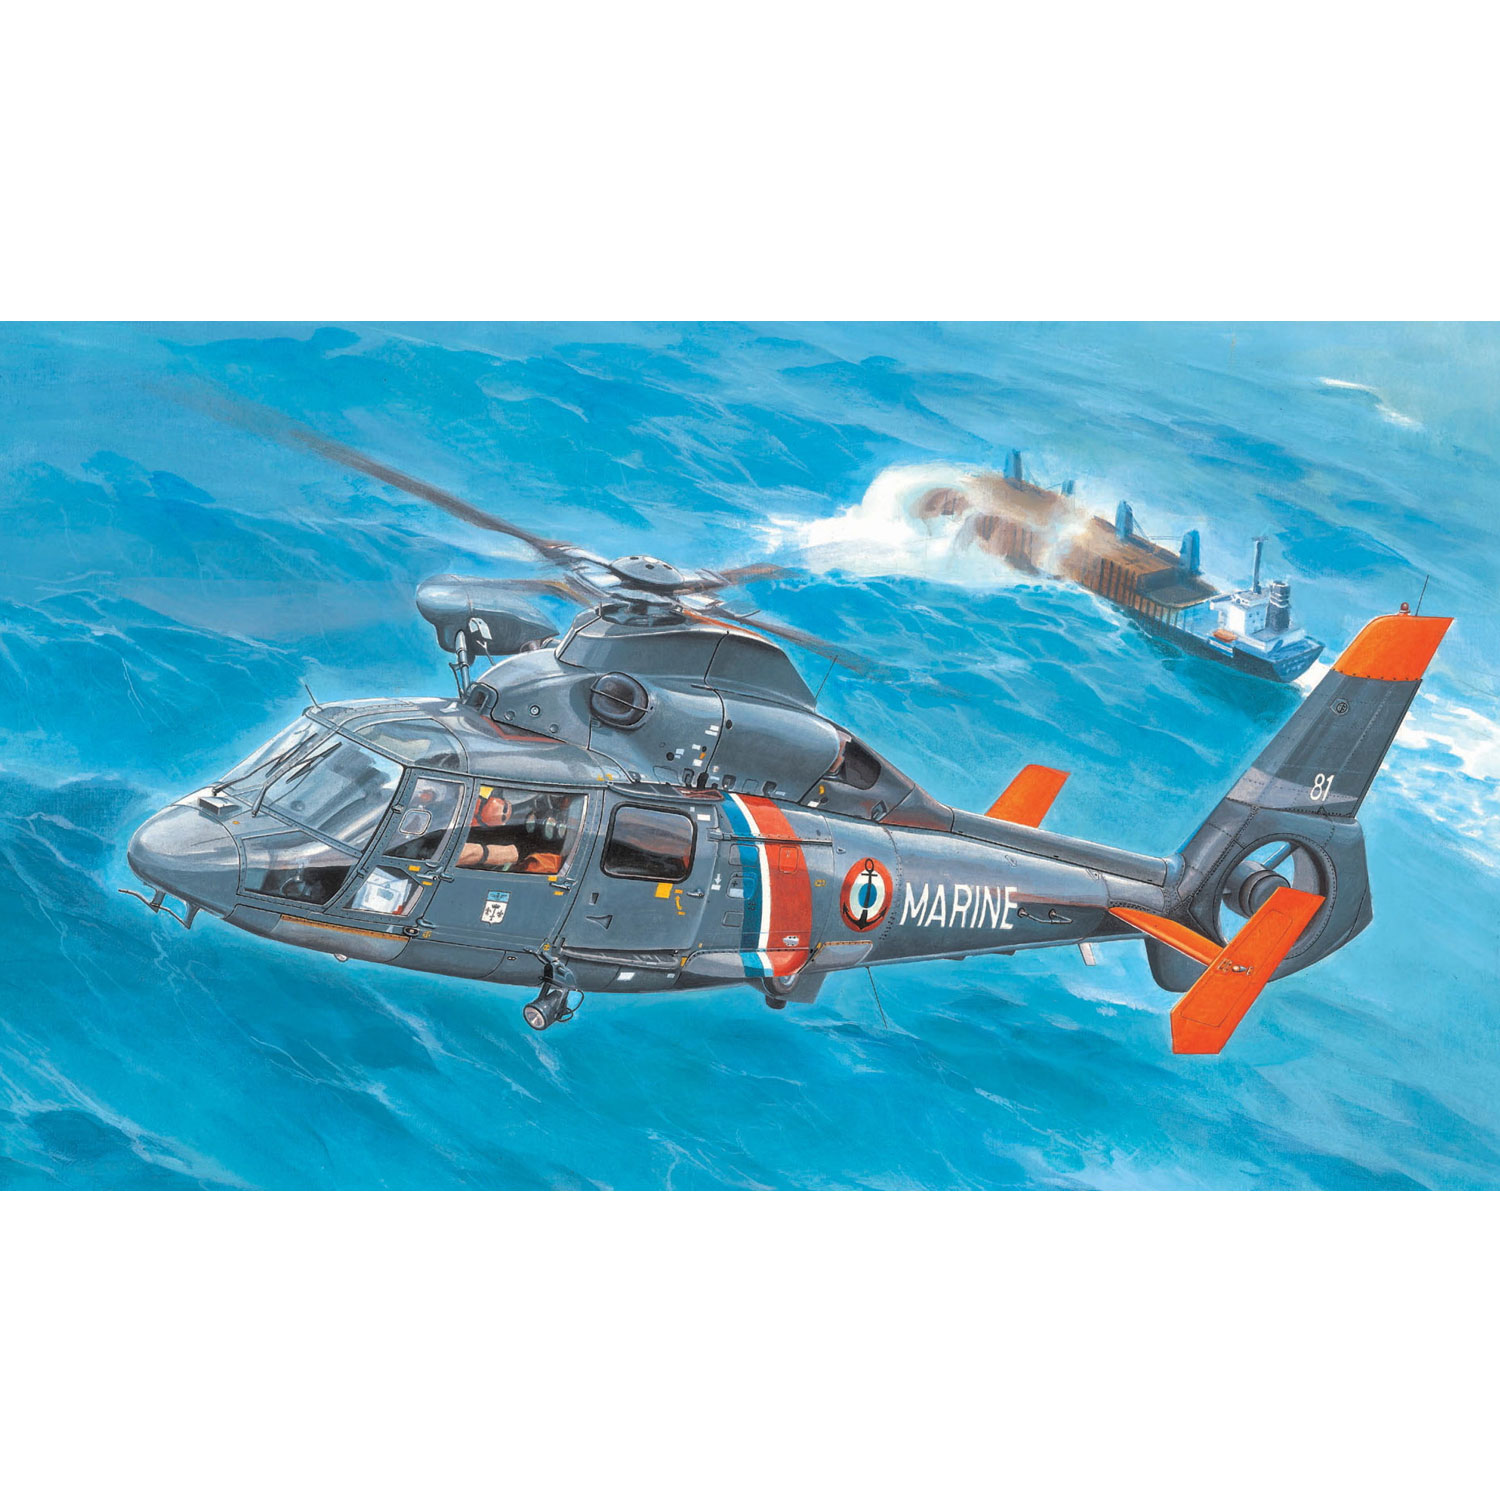 Maquette Hélicoptère : AS365 N2 Dauphin 2